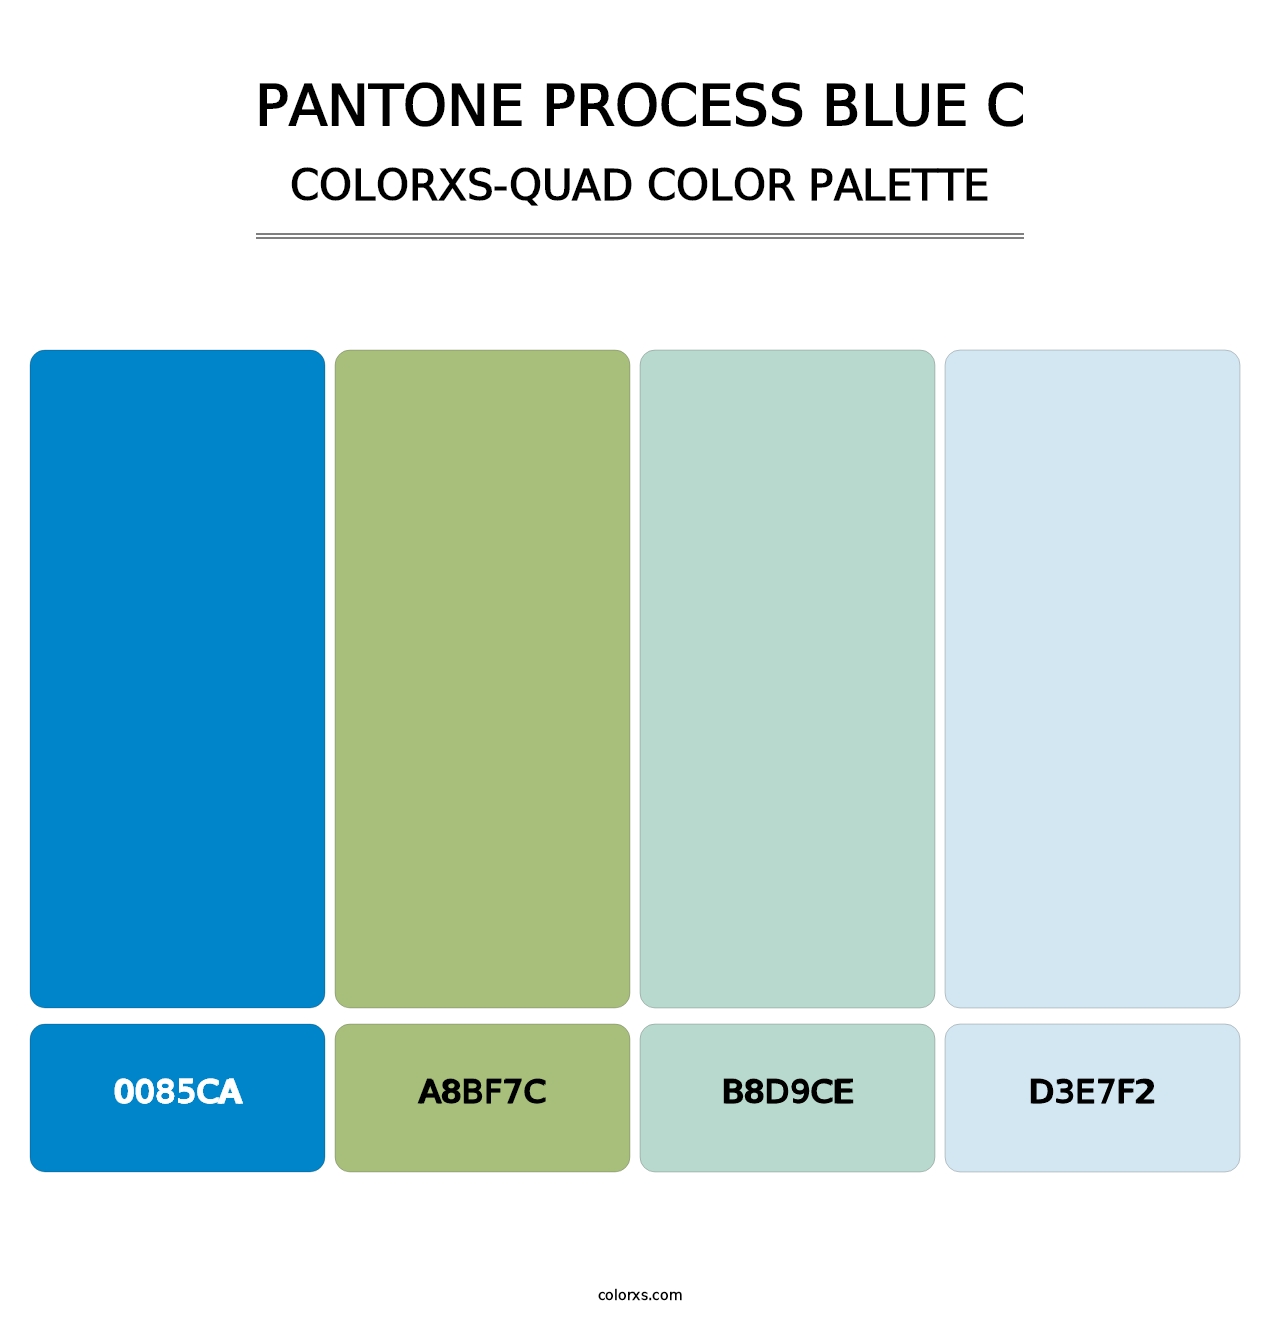 PANTONE Process Blue C - Colorxs Quad Palette